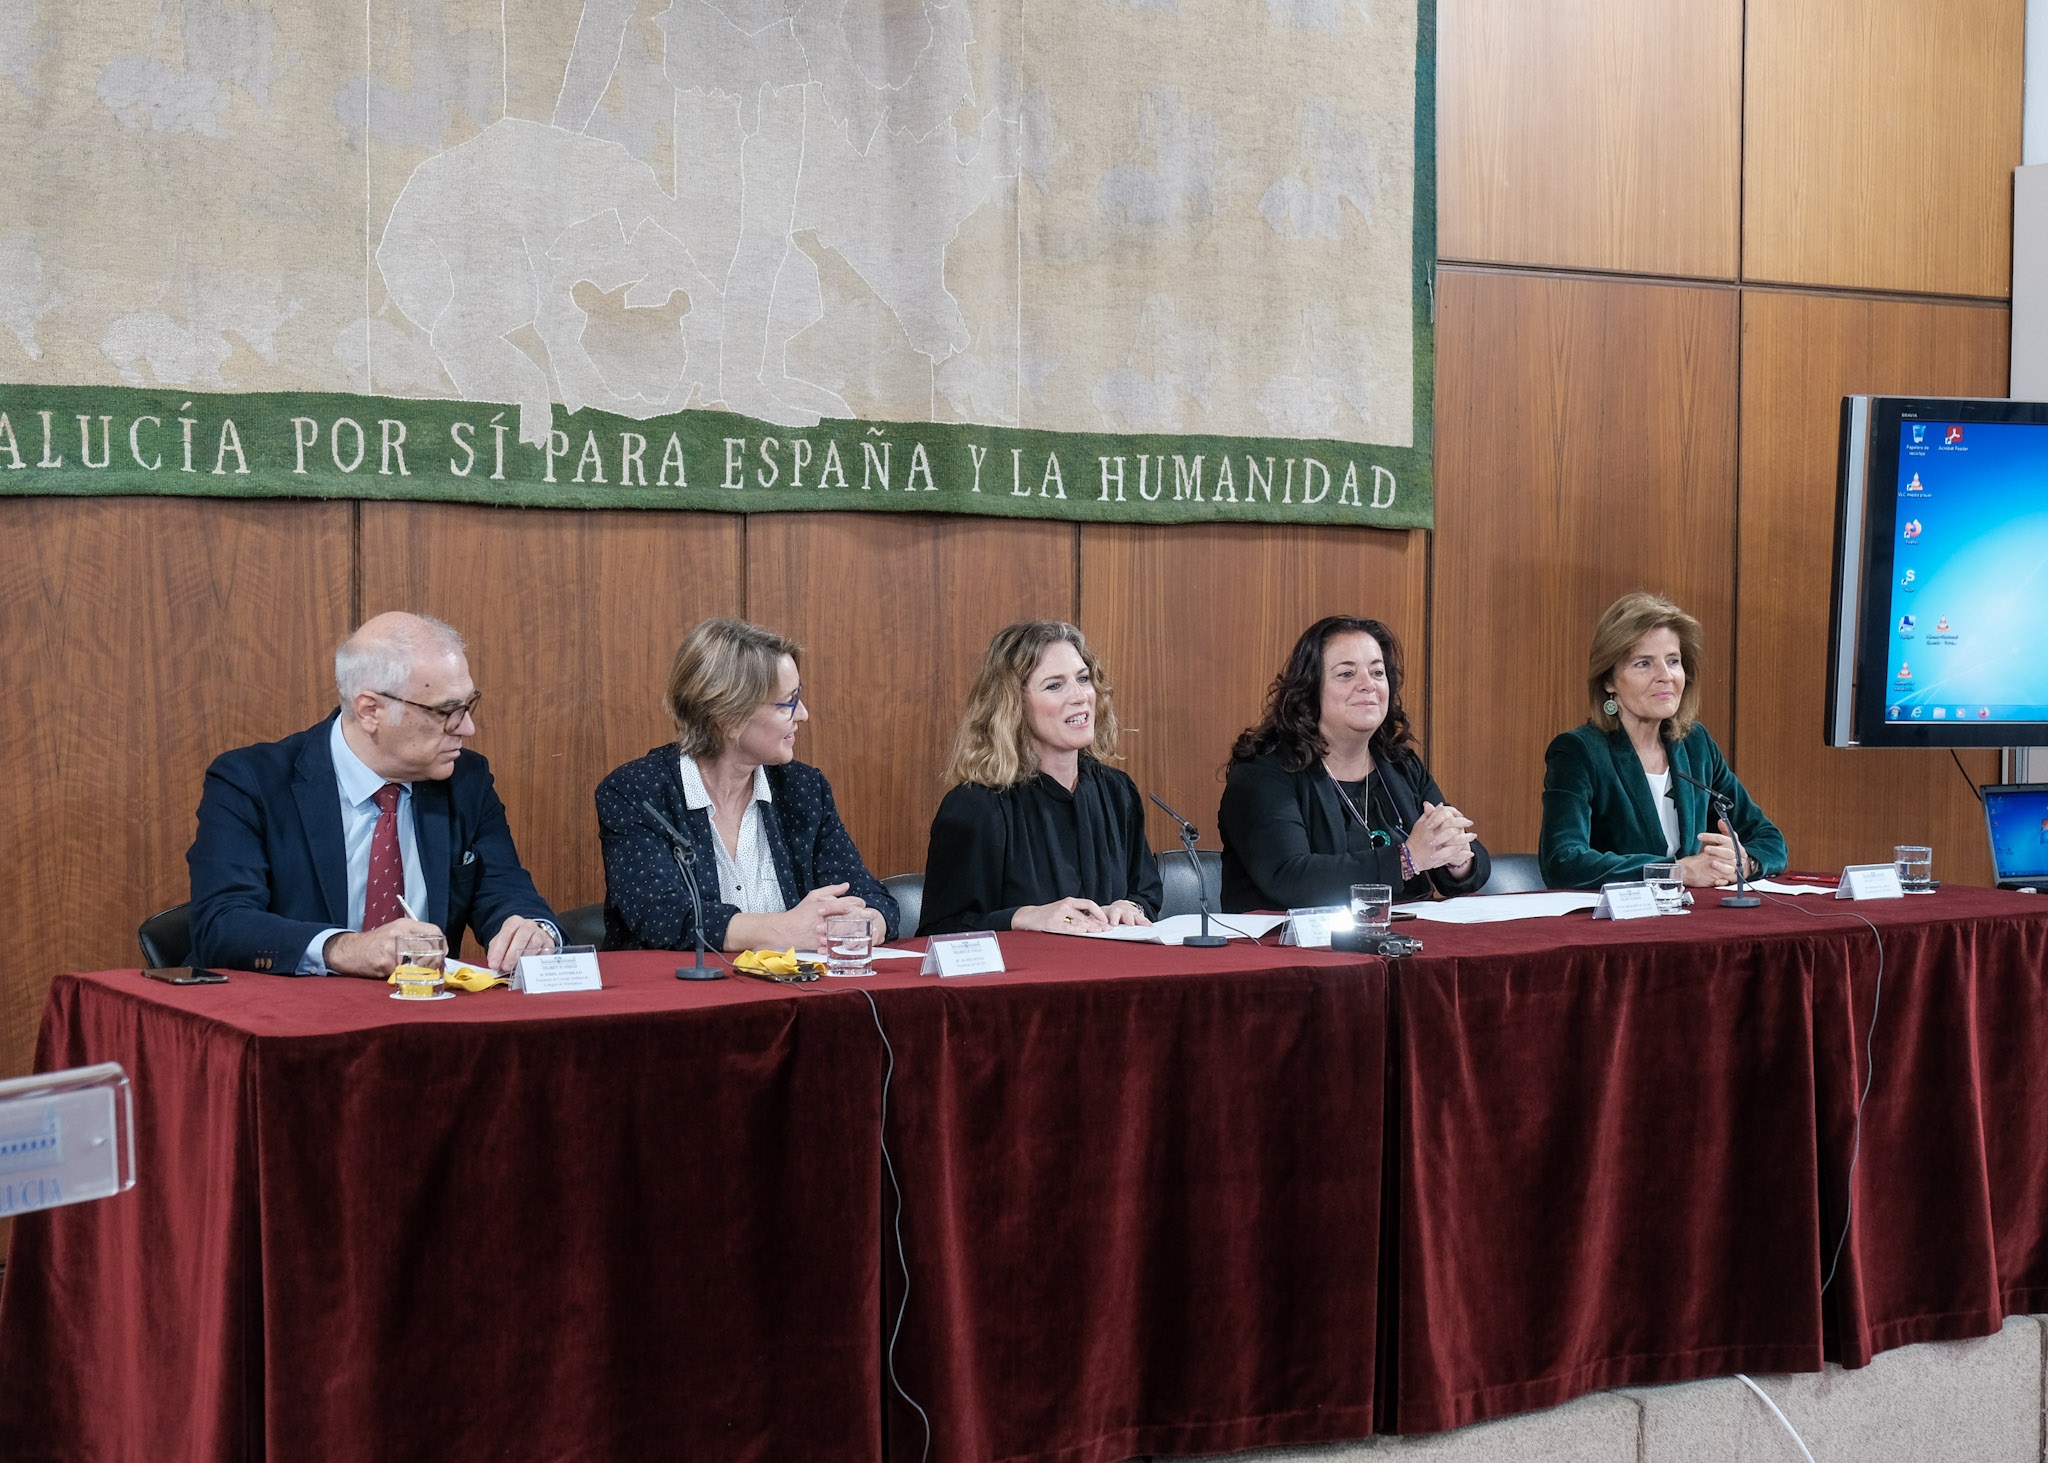  La Mesa presidencial del encuentro con los expertos y autoridades intervinientes durante la presentacin de Ana Mara Mestre, vicepresidenta primera del Parlamento